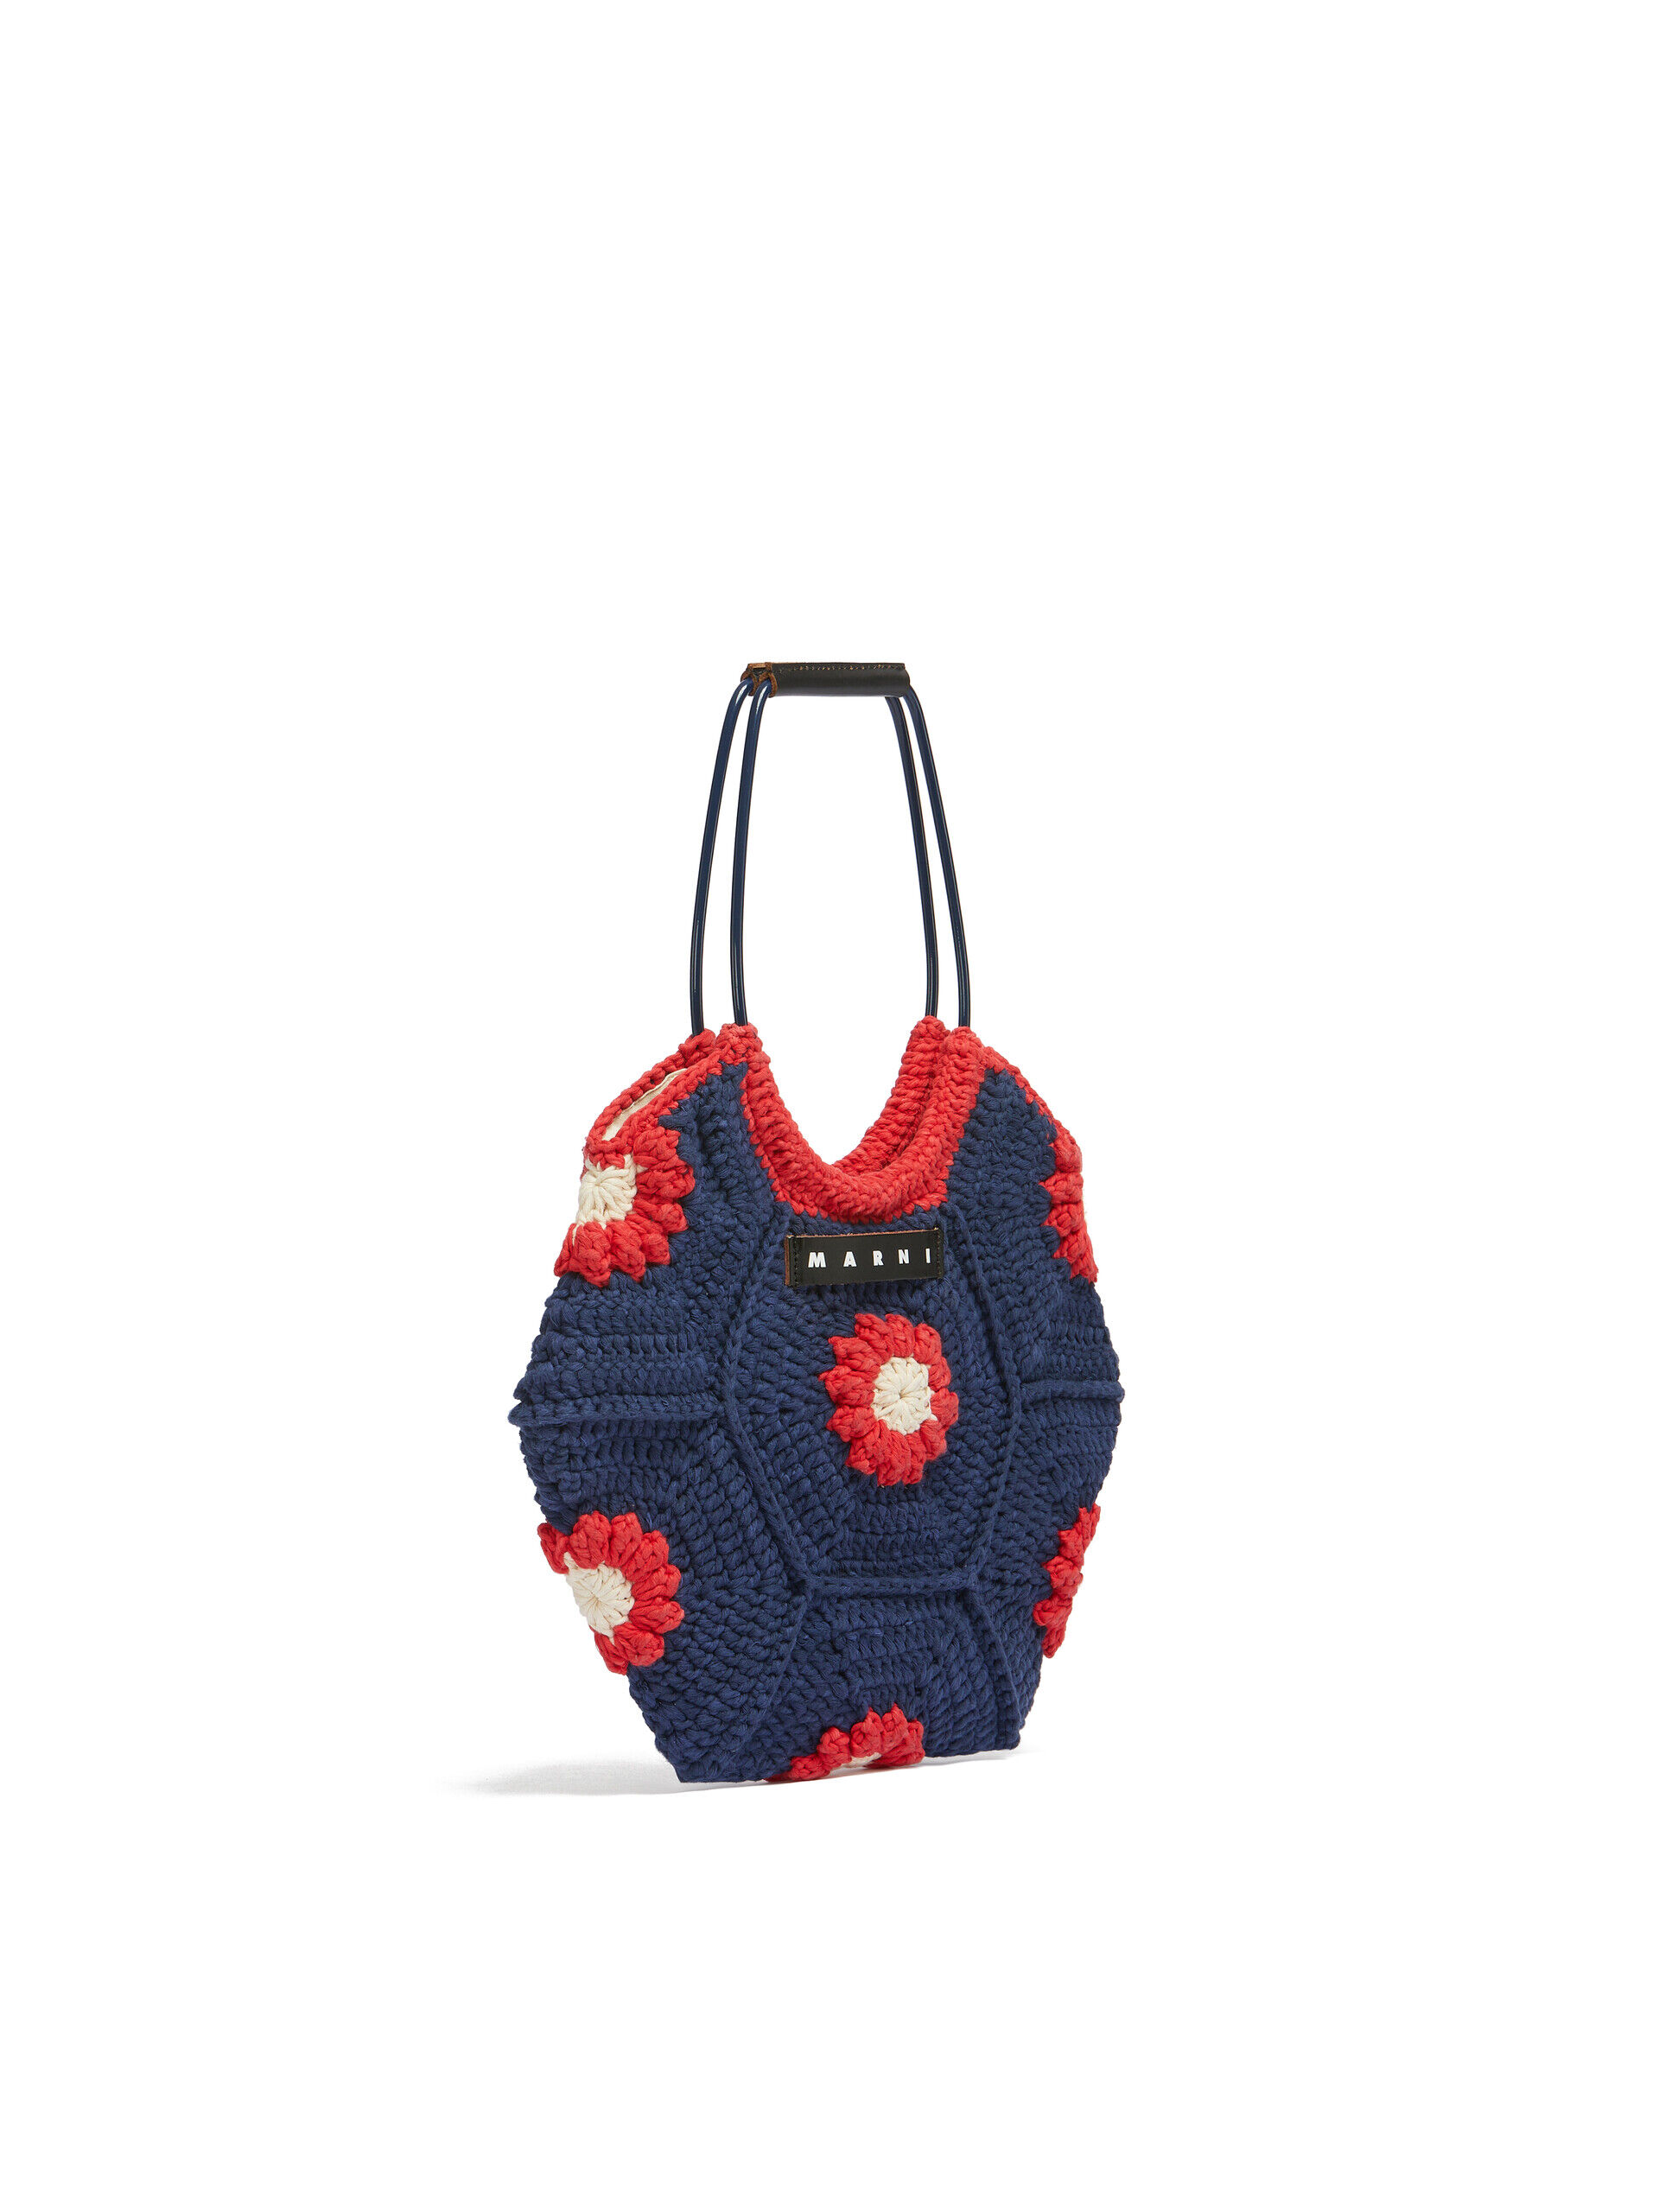 Blue flower cotton crochet MARNI MARKET handbag | Marni